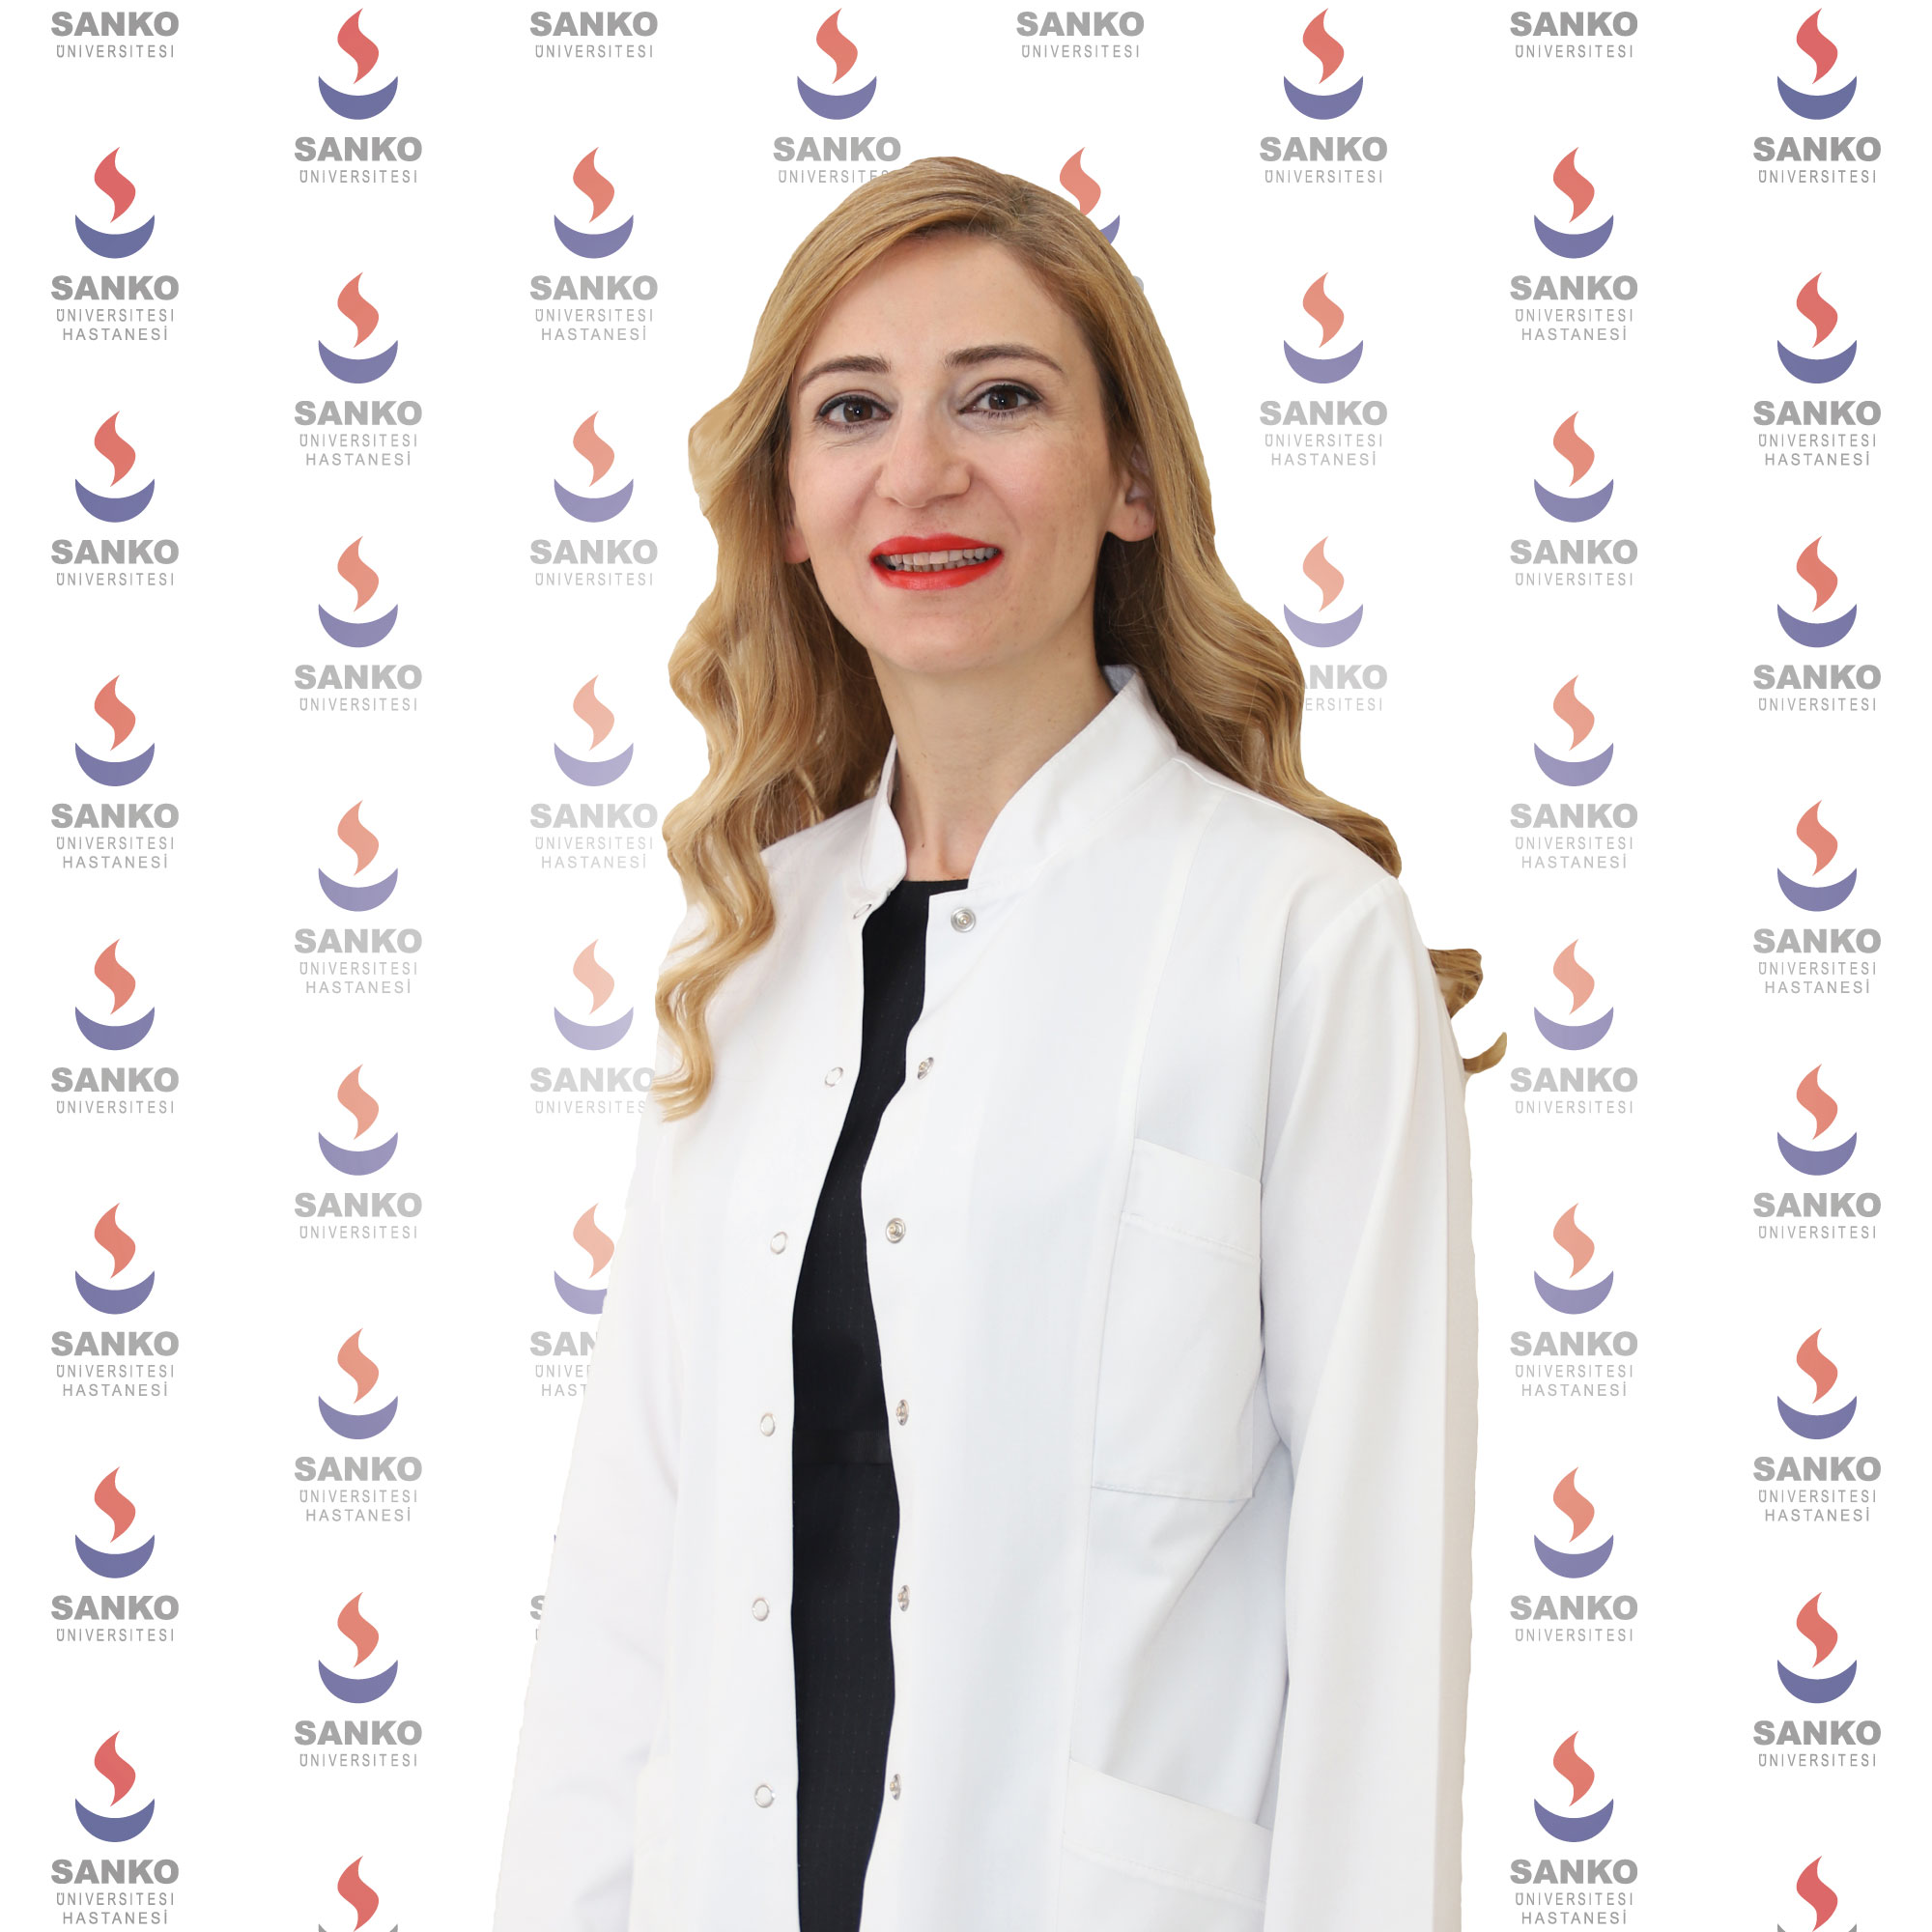 SANKO Üniversitesi Tıp Fakültesi Deri ve Zührevi Hastalıkları Ana Bilim Dalı Başkanı  Doç. Dr. Fatma Elif Yıldırım’dan “Yaz sıcağında cilt sağlığı” uyarısı